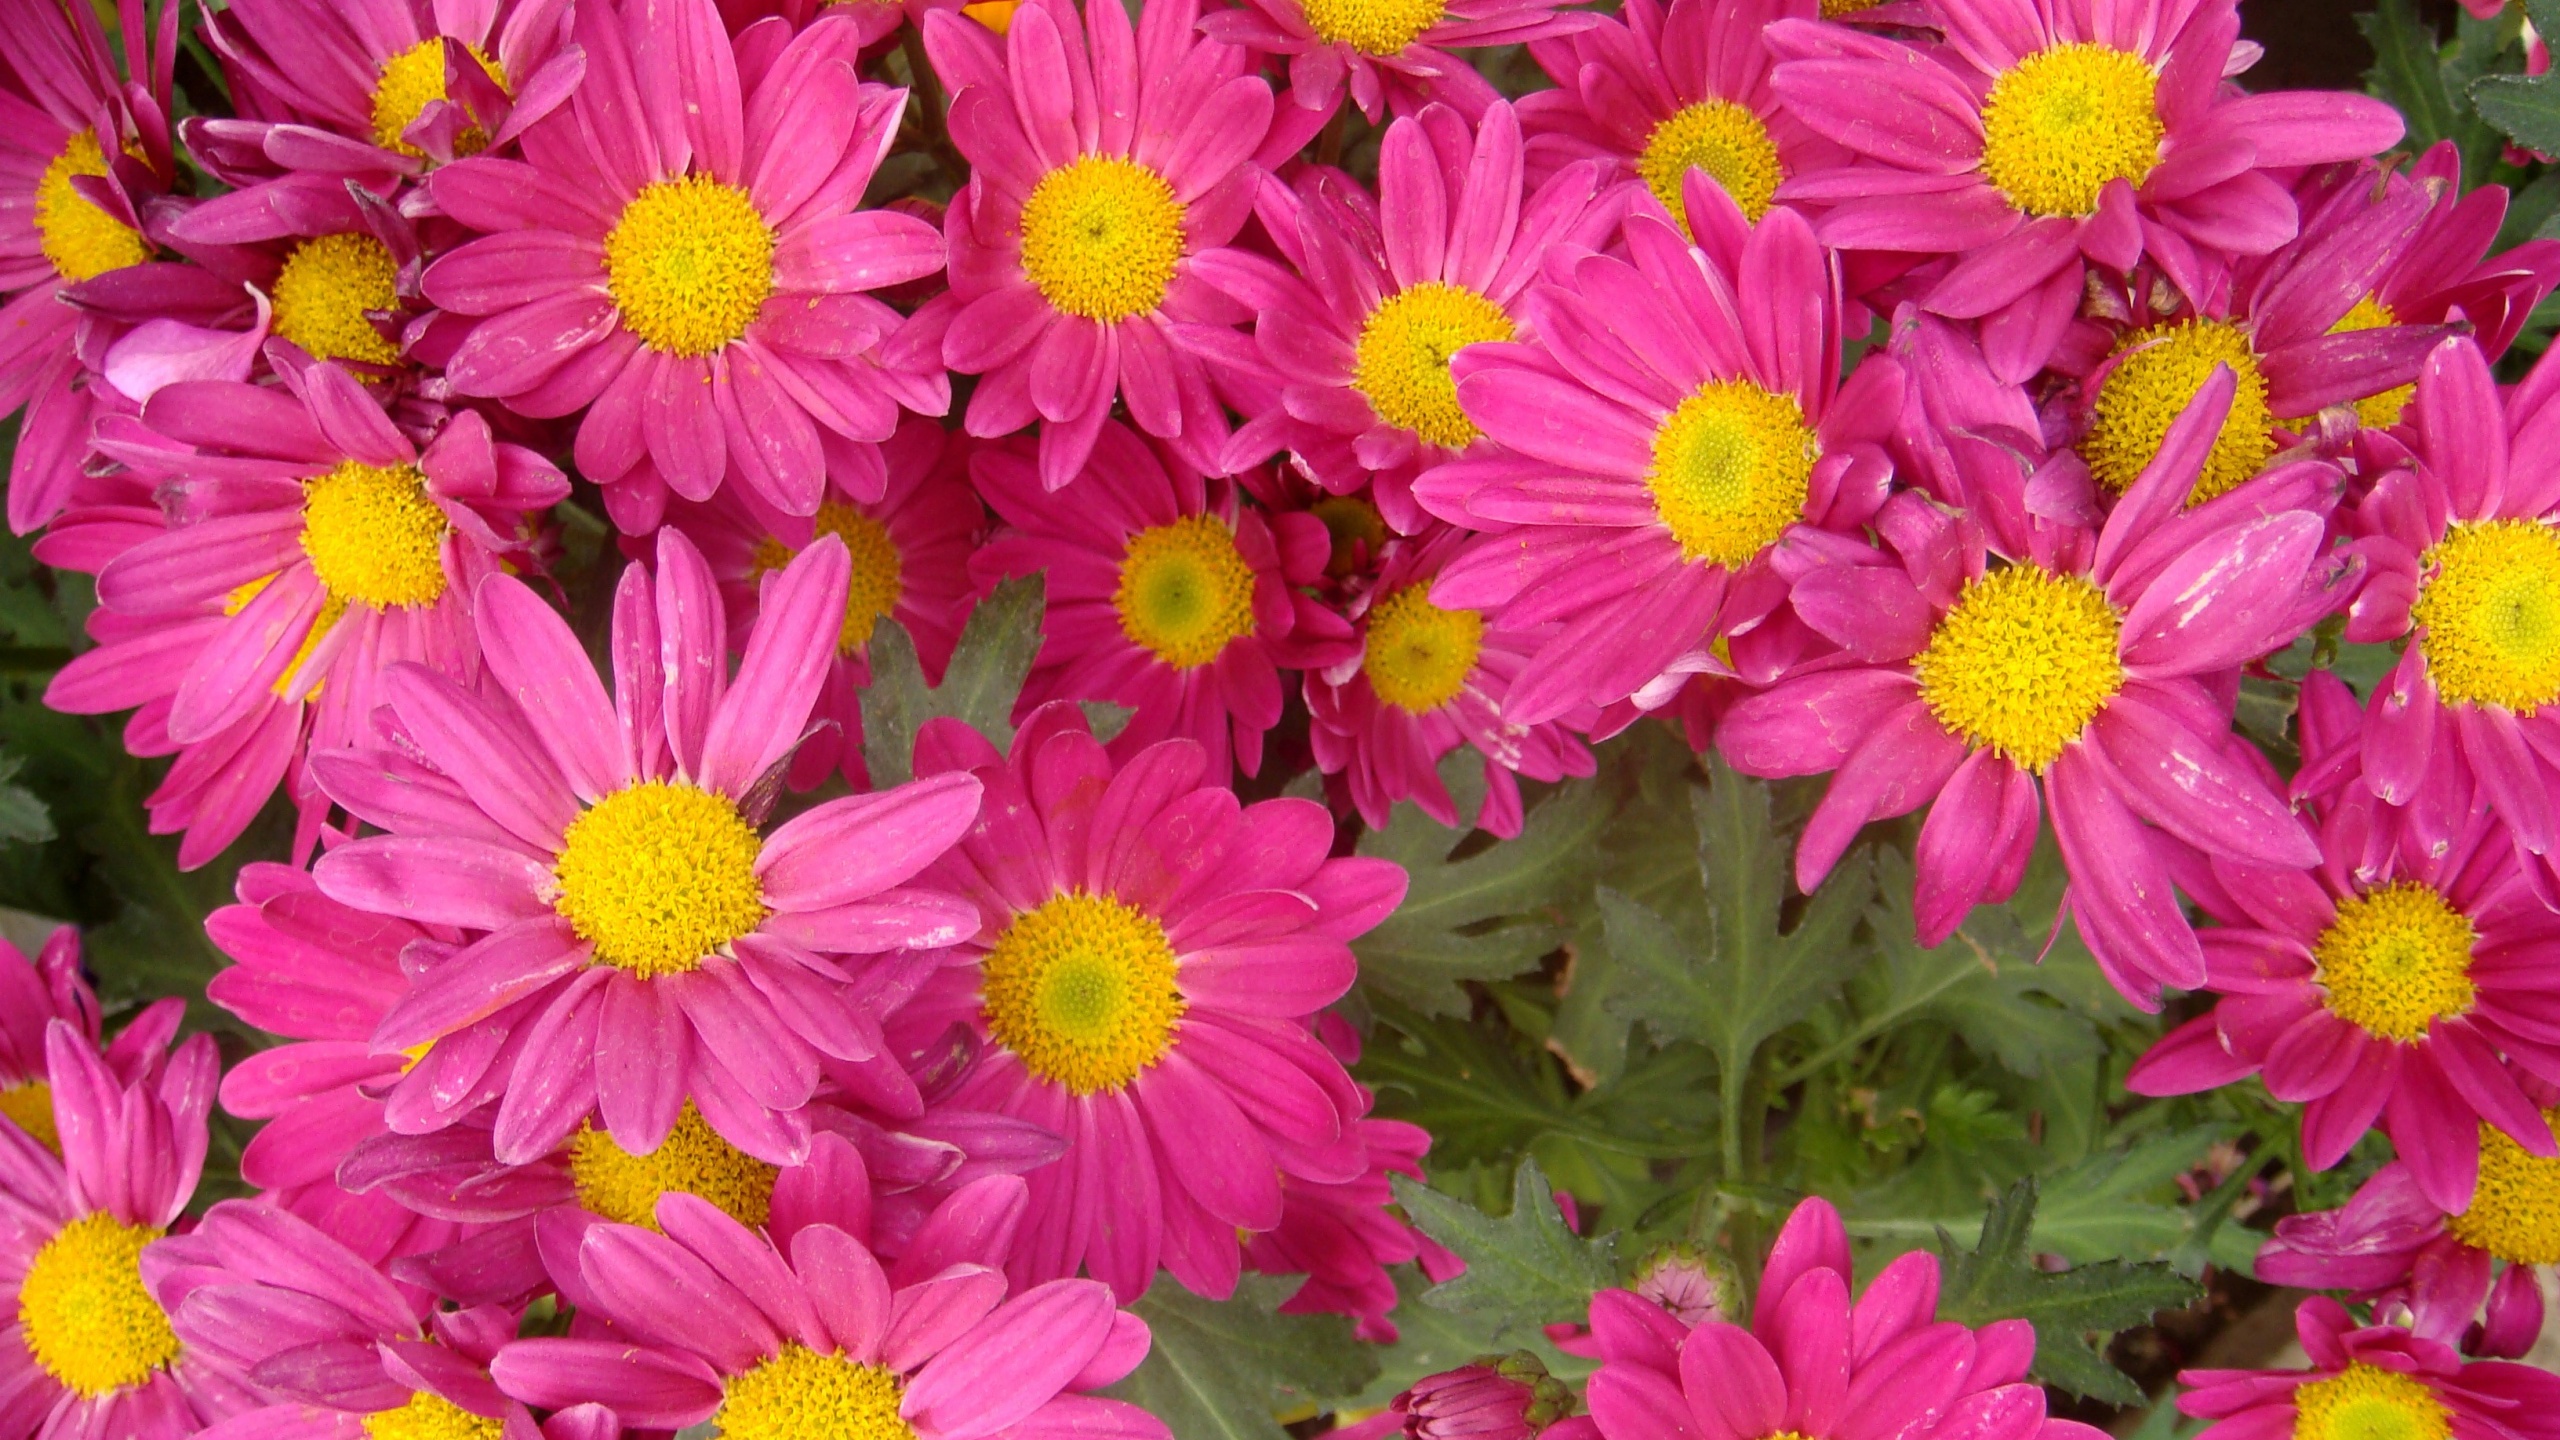 颜色, 菊花, 显花植物, 玛格丽的菊花, 粉红色 壁纸 2560x1440 允许